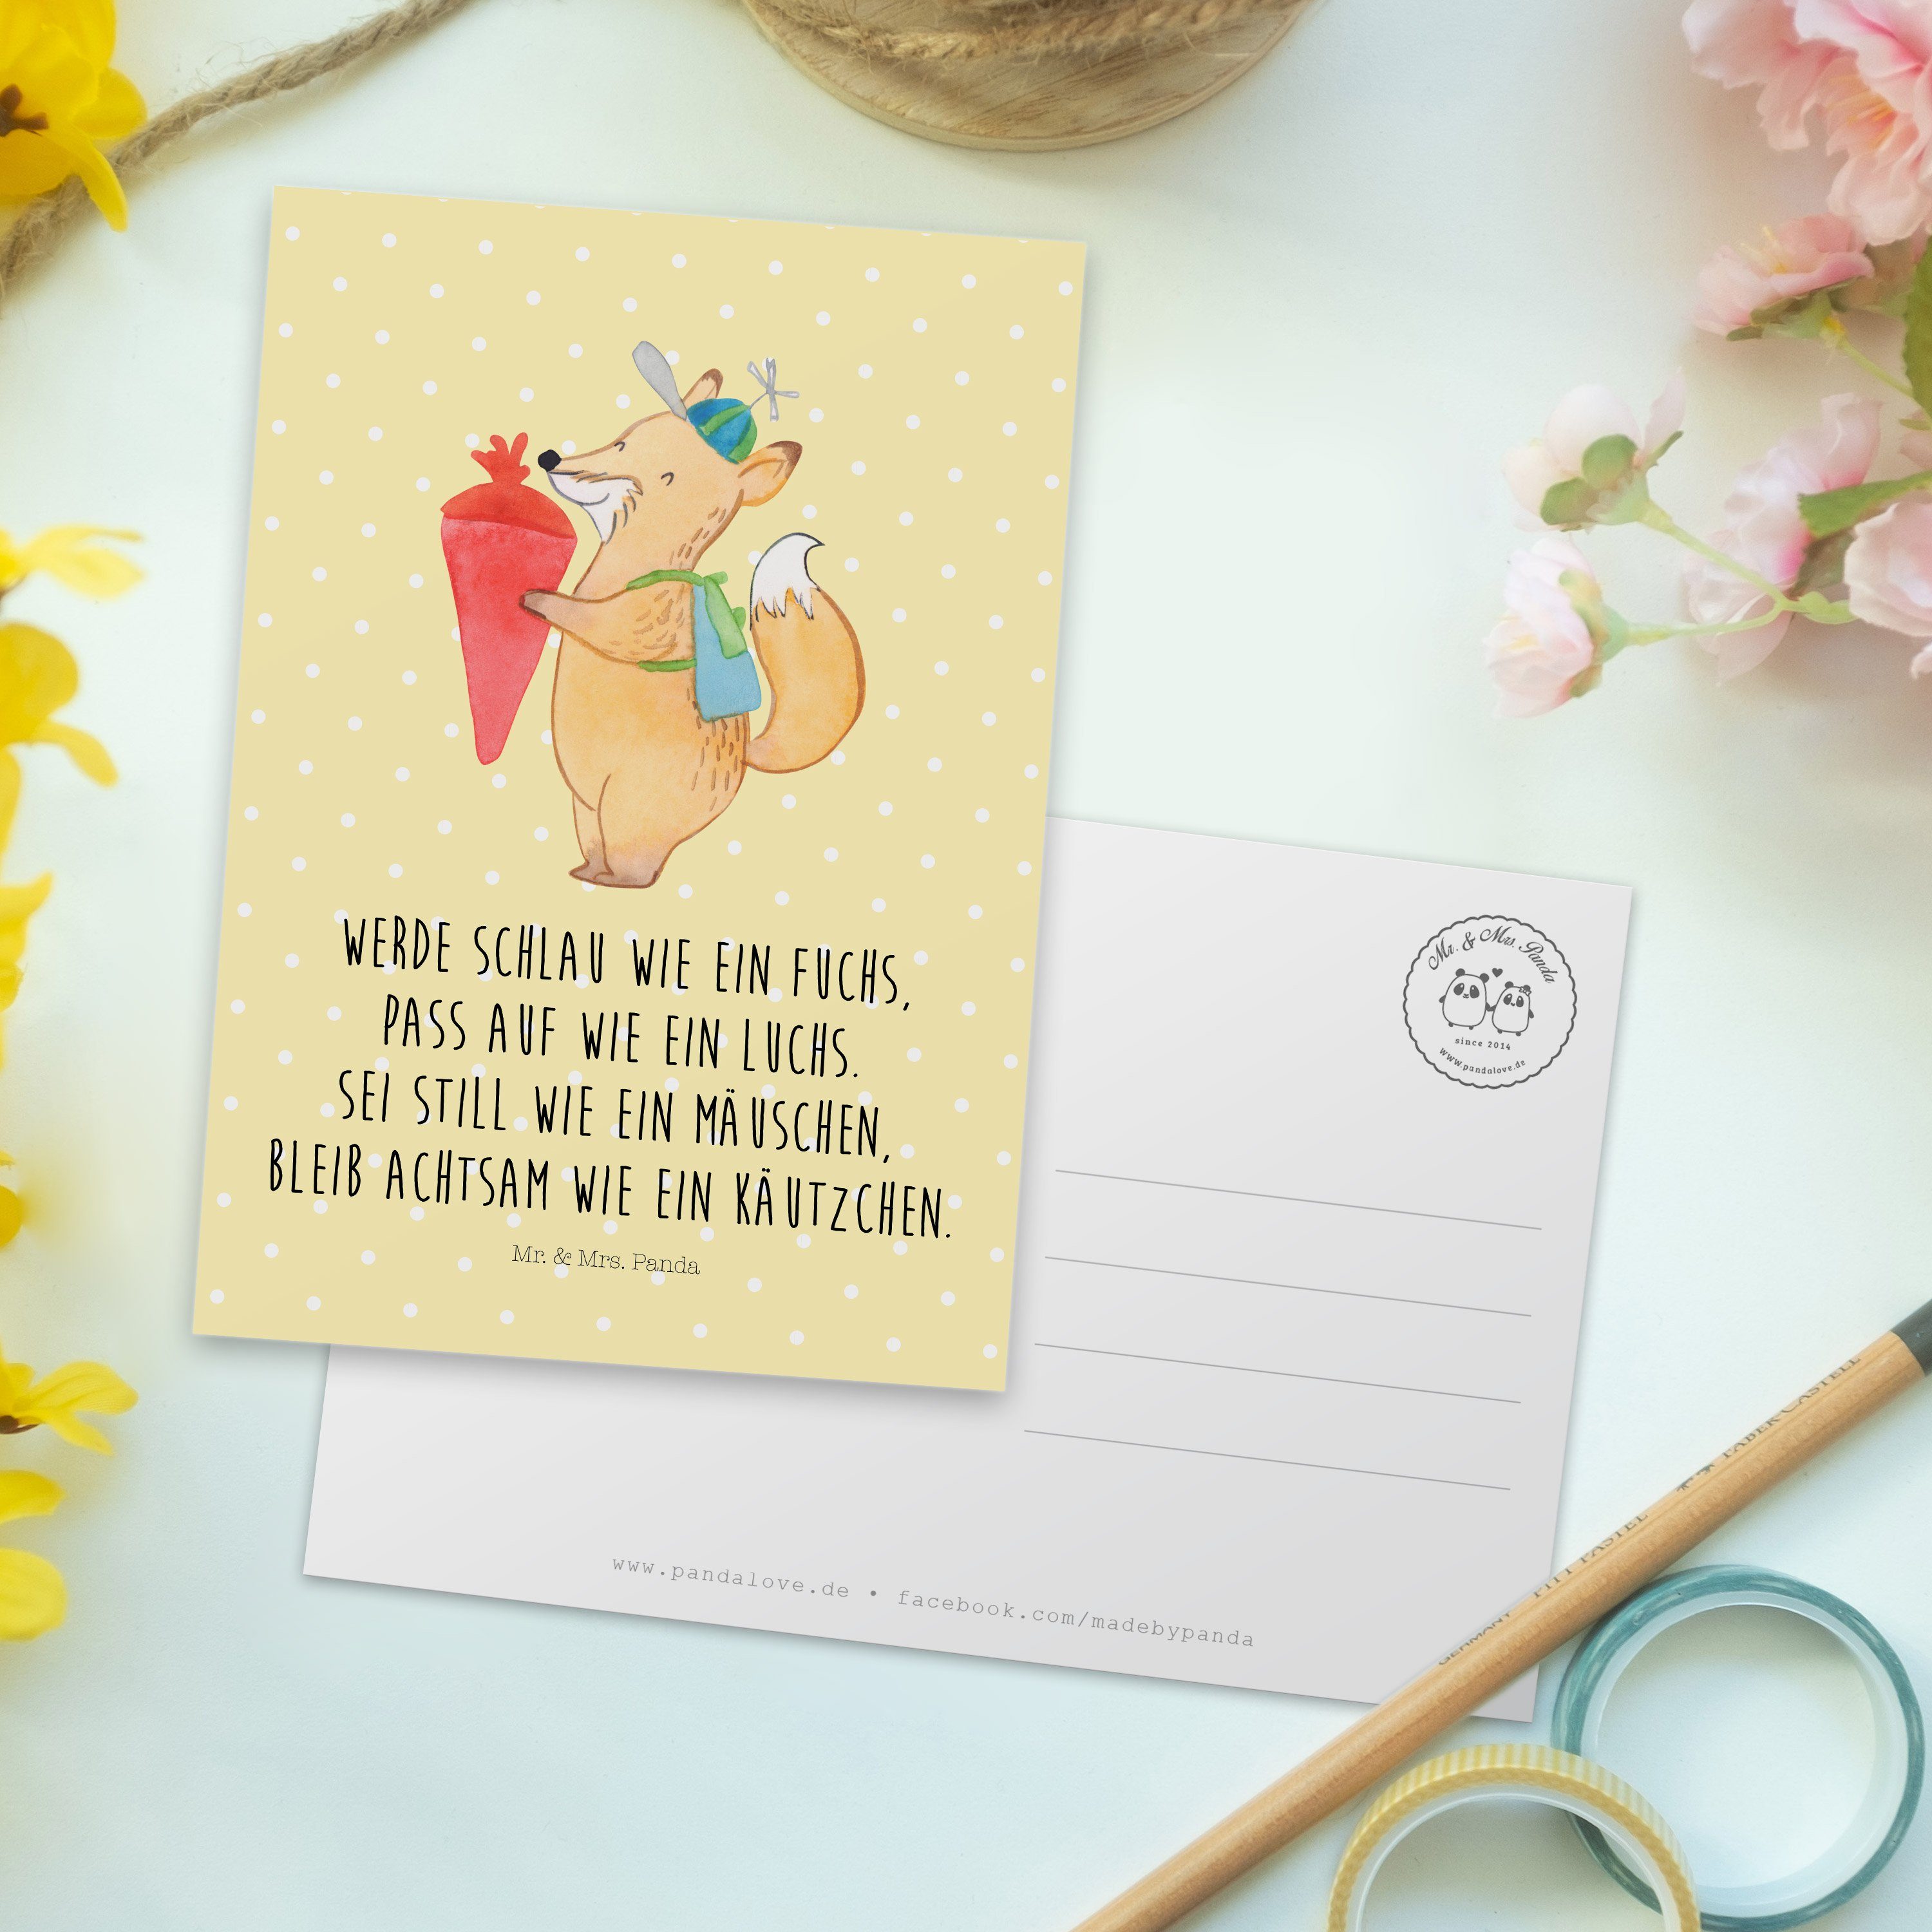 Mr. & Mrs. Panda Schulkind Fuchs - Laune, Gute Geschenk, Ansichtskarte - Pastell Gelb Postkarte